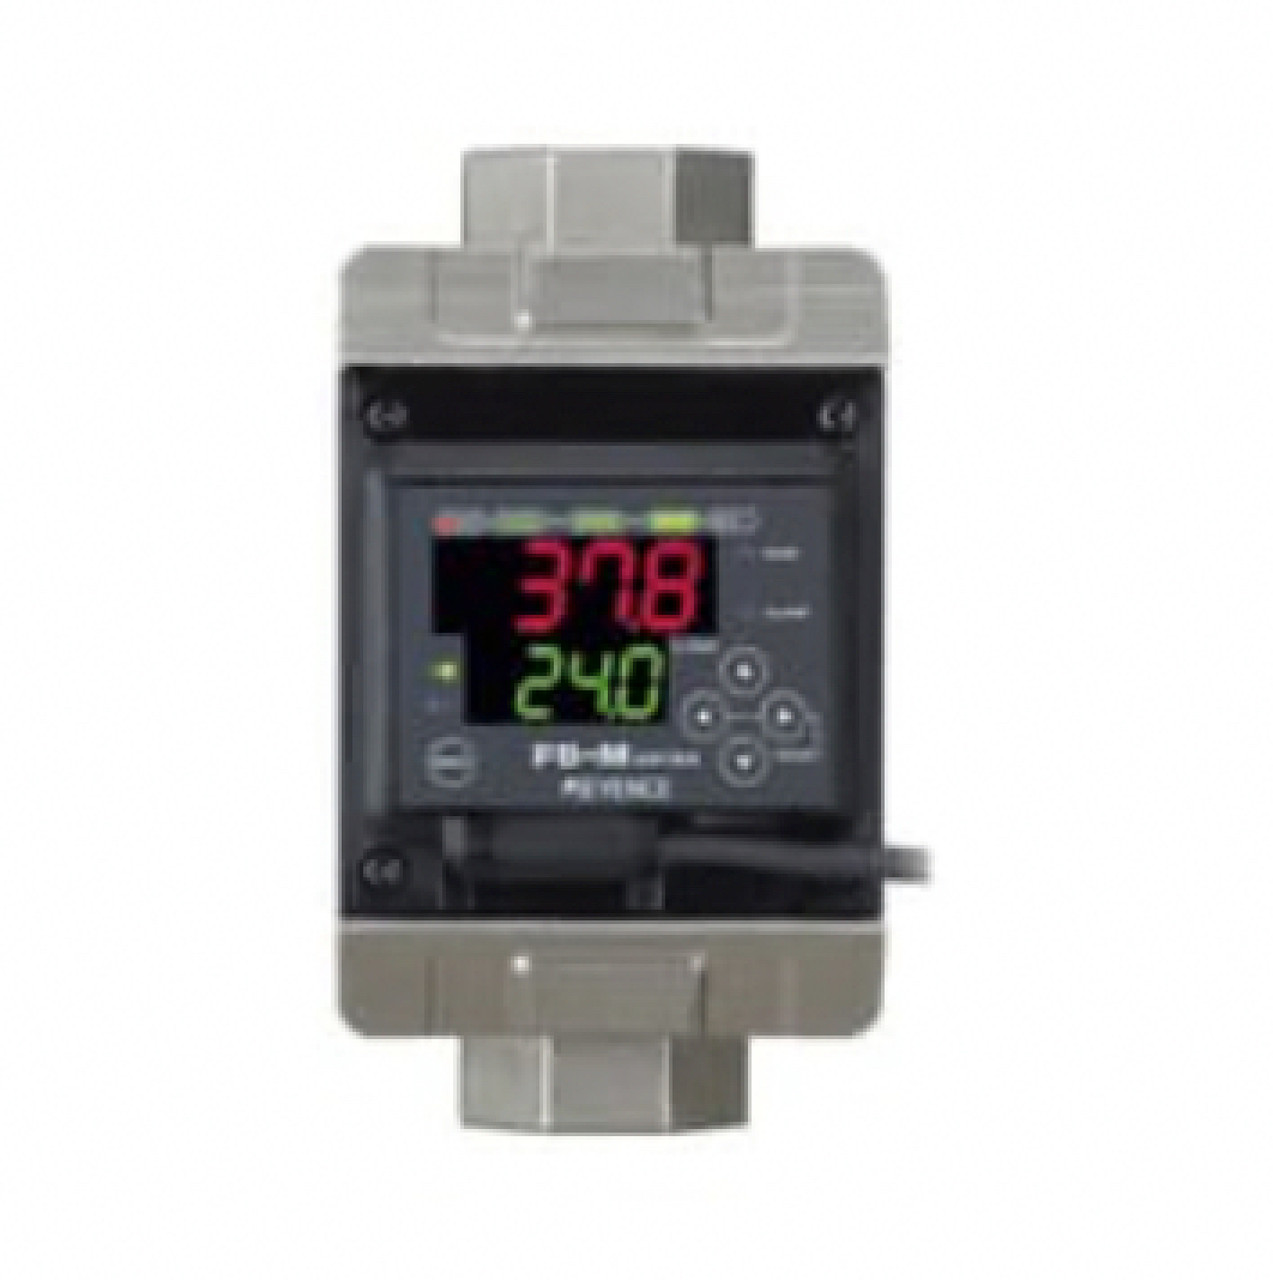 Keyence FD-MZ100ATKP Flow Sensors / Meters, Main Unit, Portrait, 100 L/min, PNP [Refurbished]